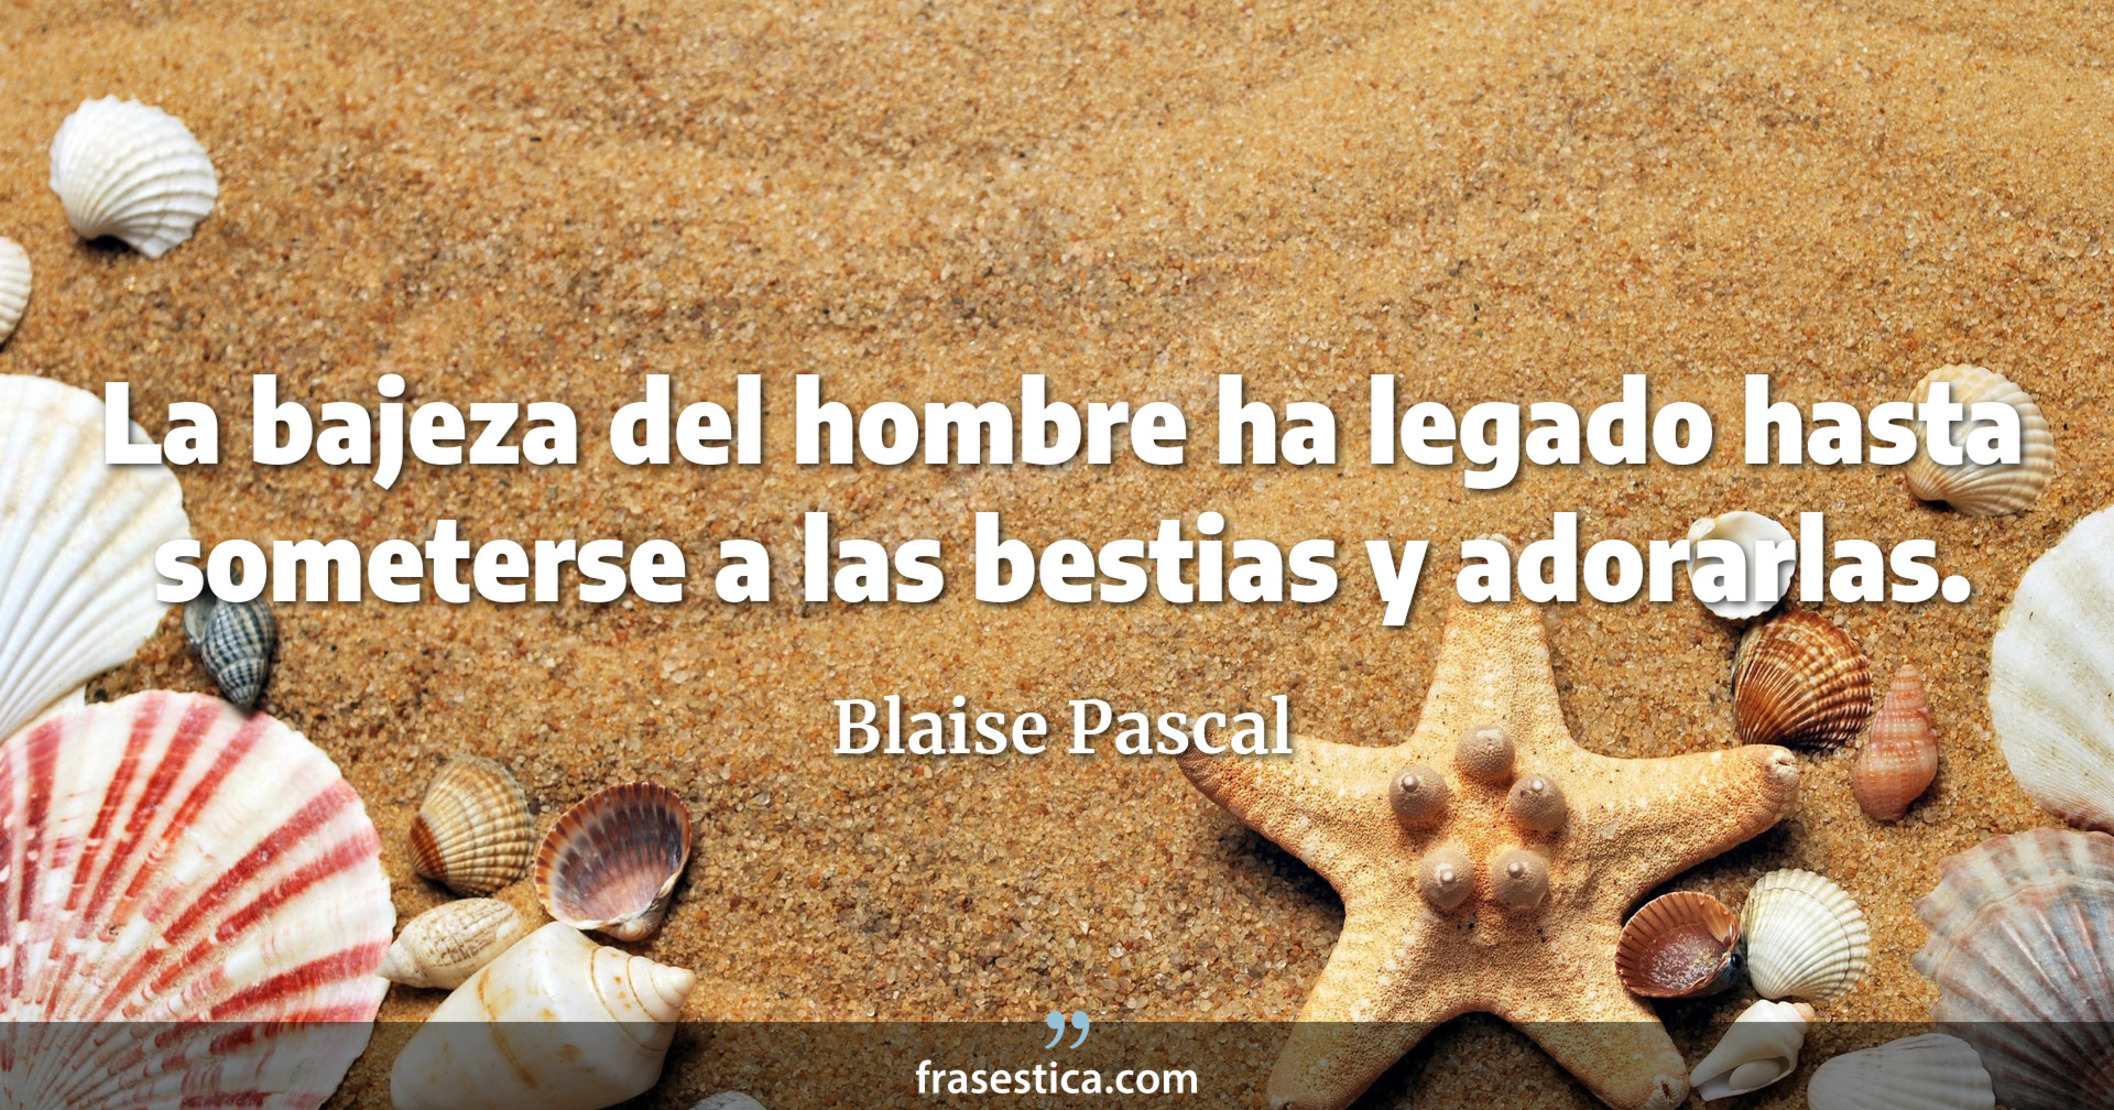 La bajeza del hombre ha legado hasta someterse a las bestias y adorarlas. - Blaise Pascal